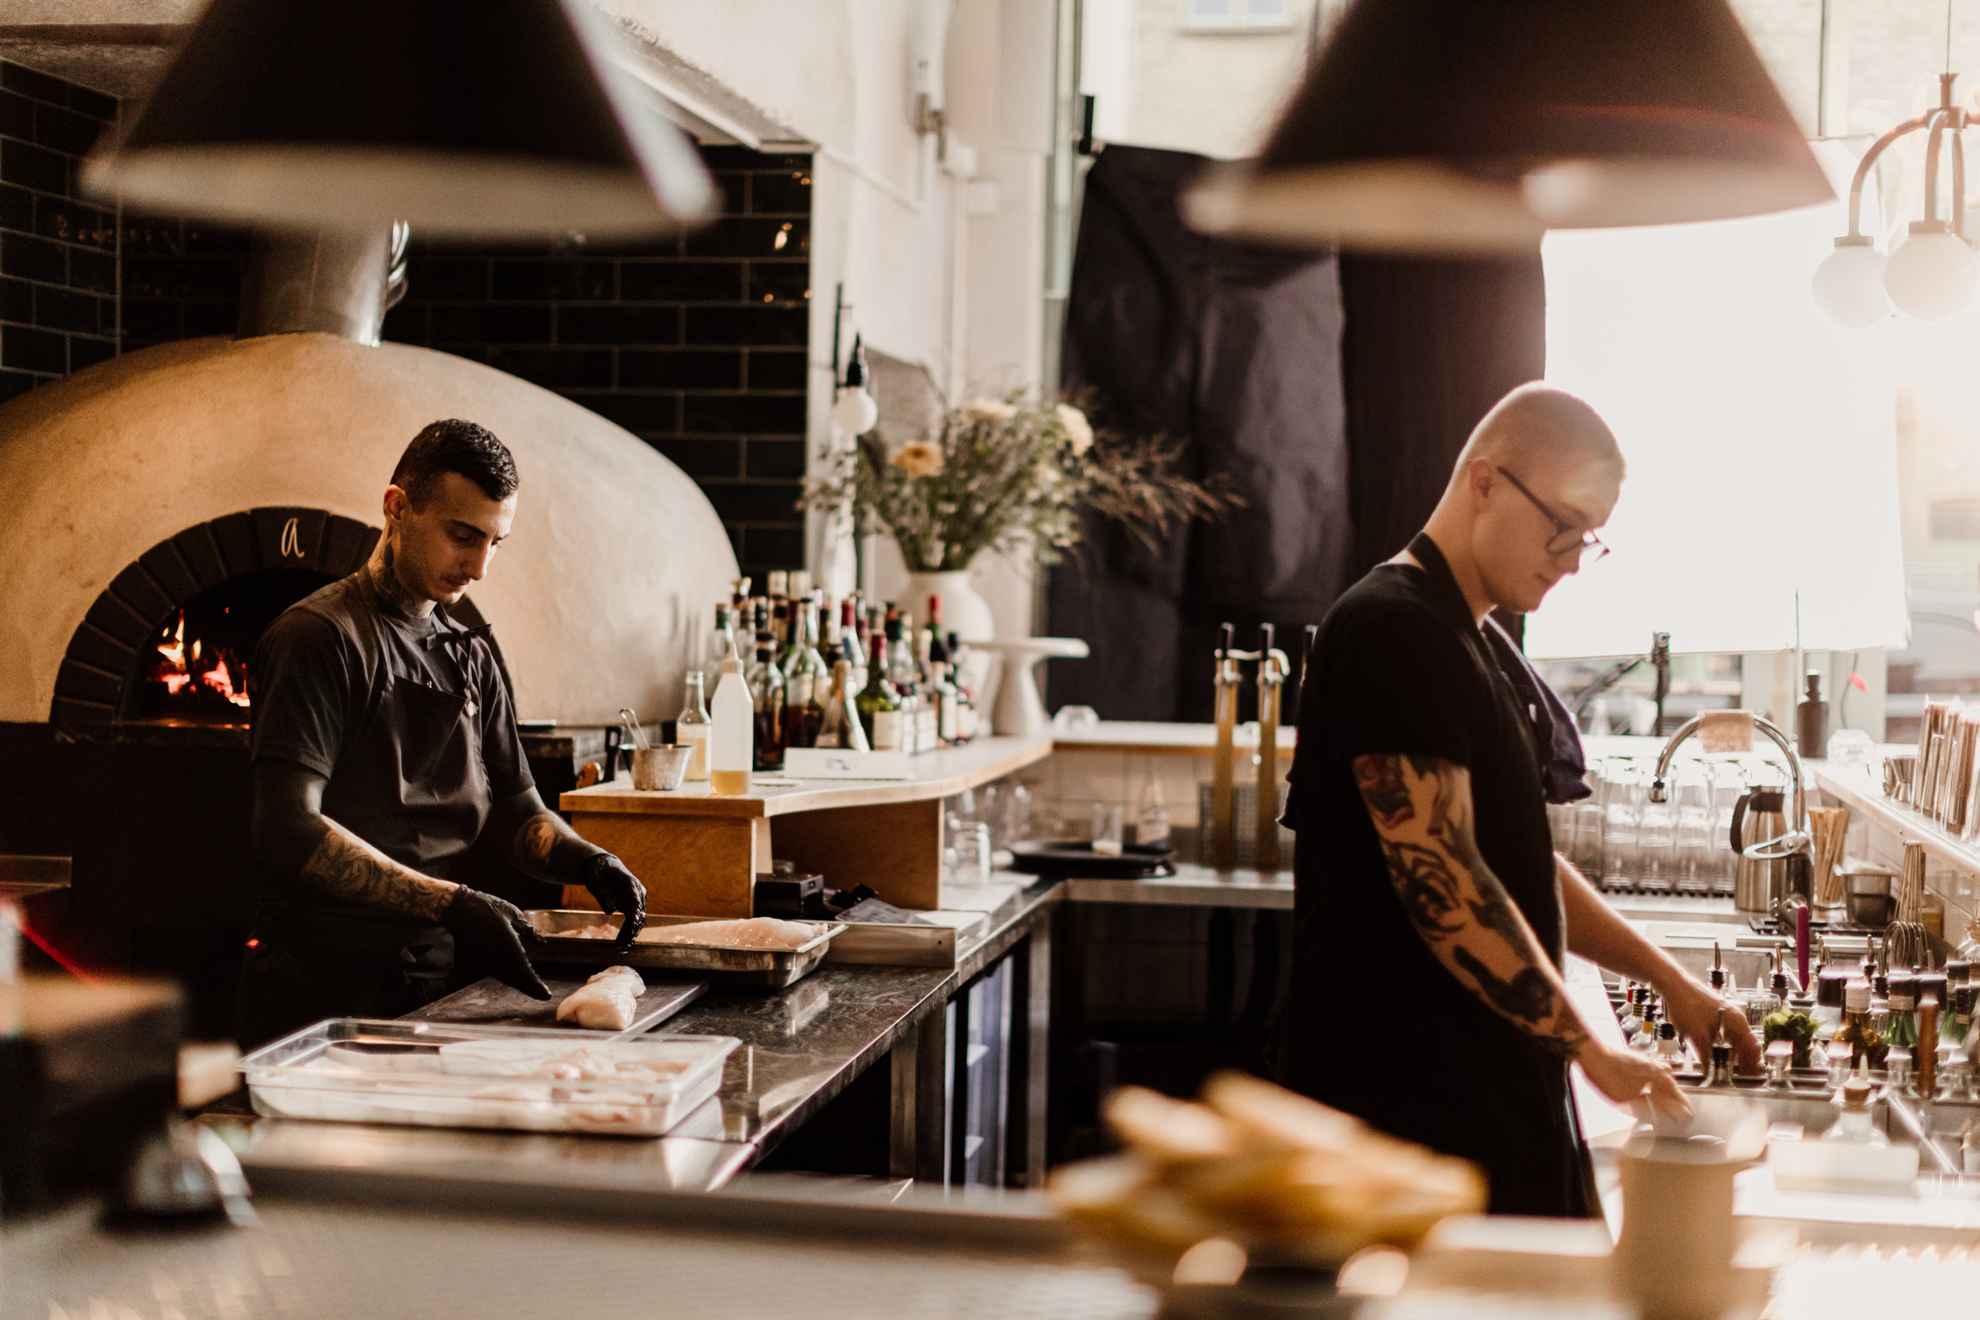 Two chefs working in a restaurant kitchen.